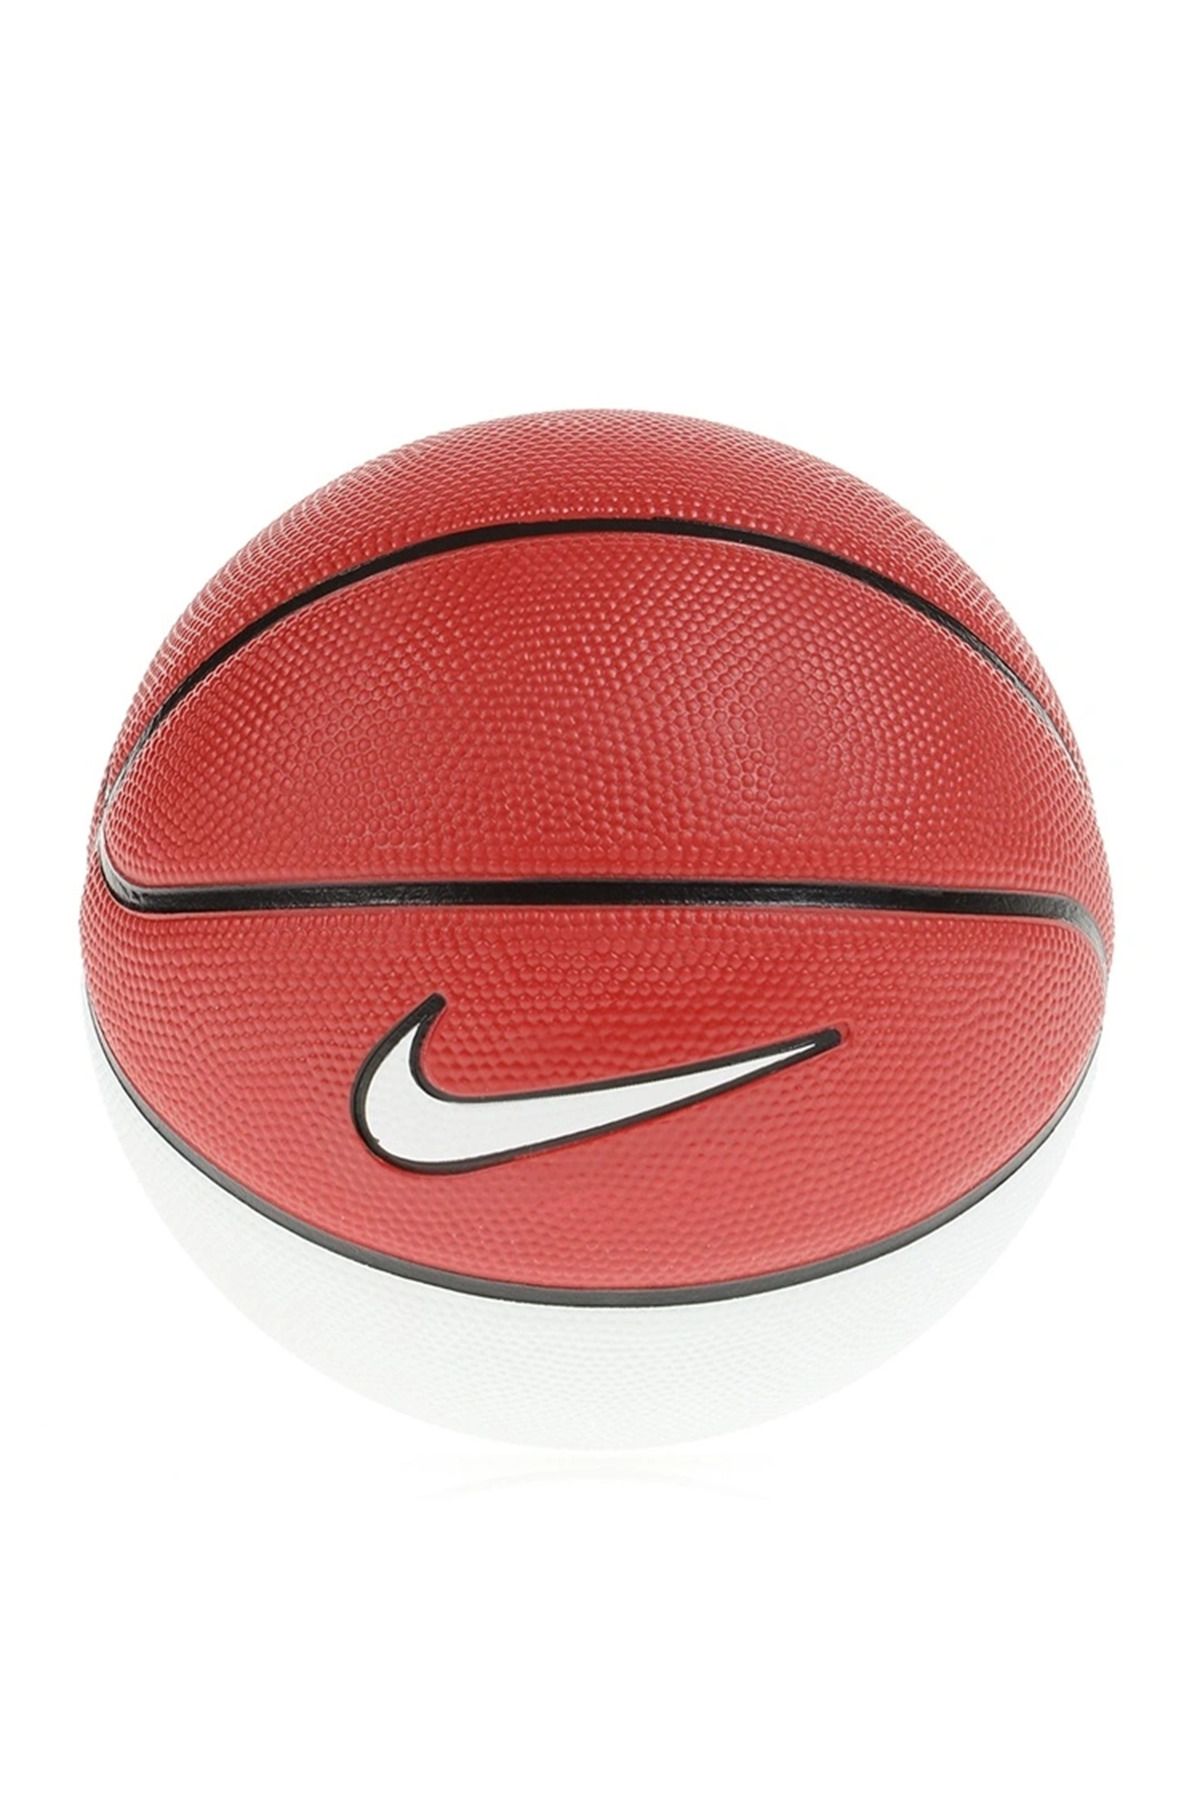 Nike Skills Unisex Kırmızı Basketbol Topu N.000.1285.626.03